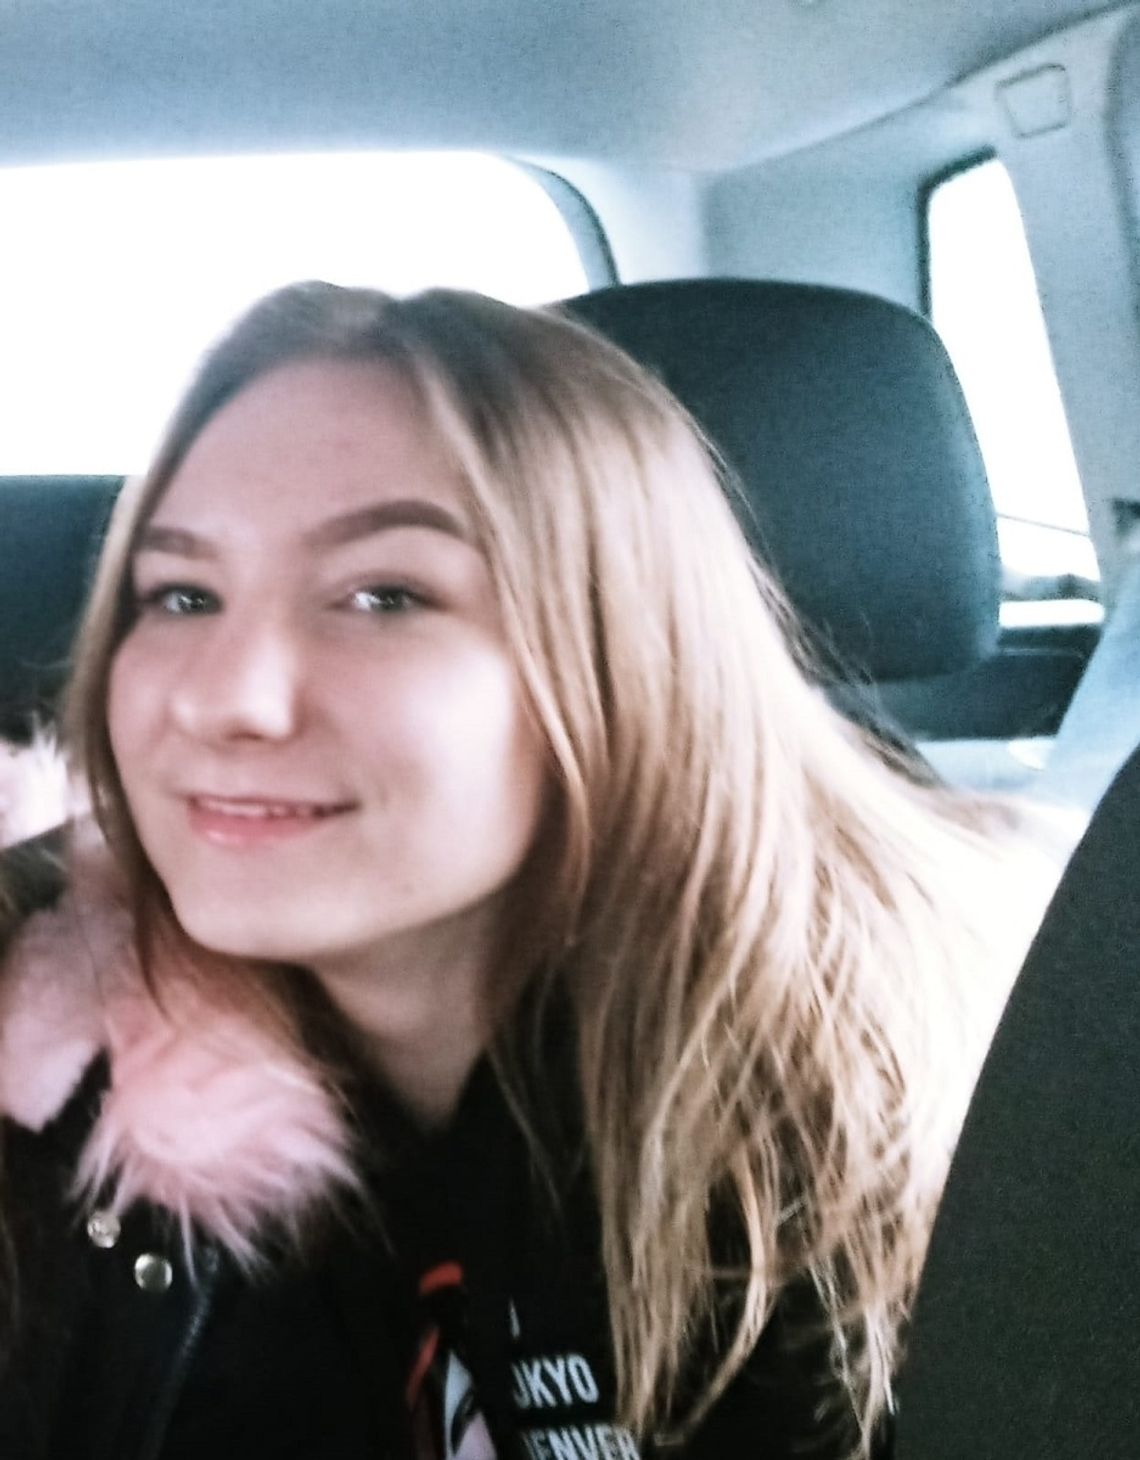 Zaginęła 15-letnia Zuzanna Smolińska. Policja z Nakła prosi o kontakt osoby, które mogą mieć wiedzę na temat miejsca przebywania nastolatki